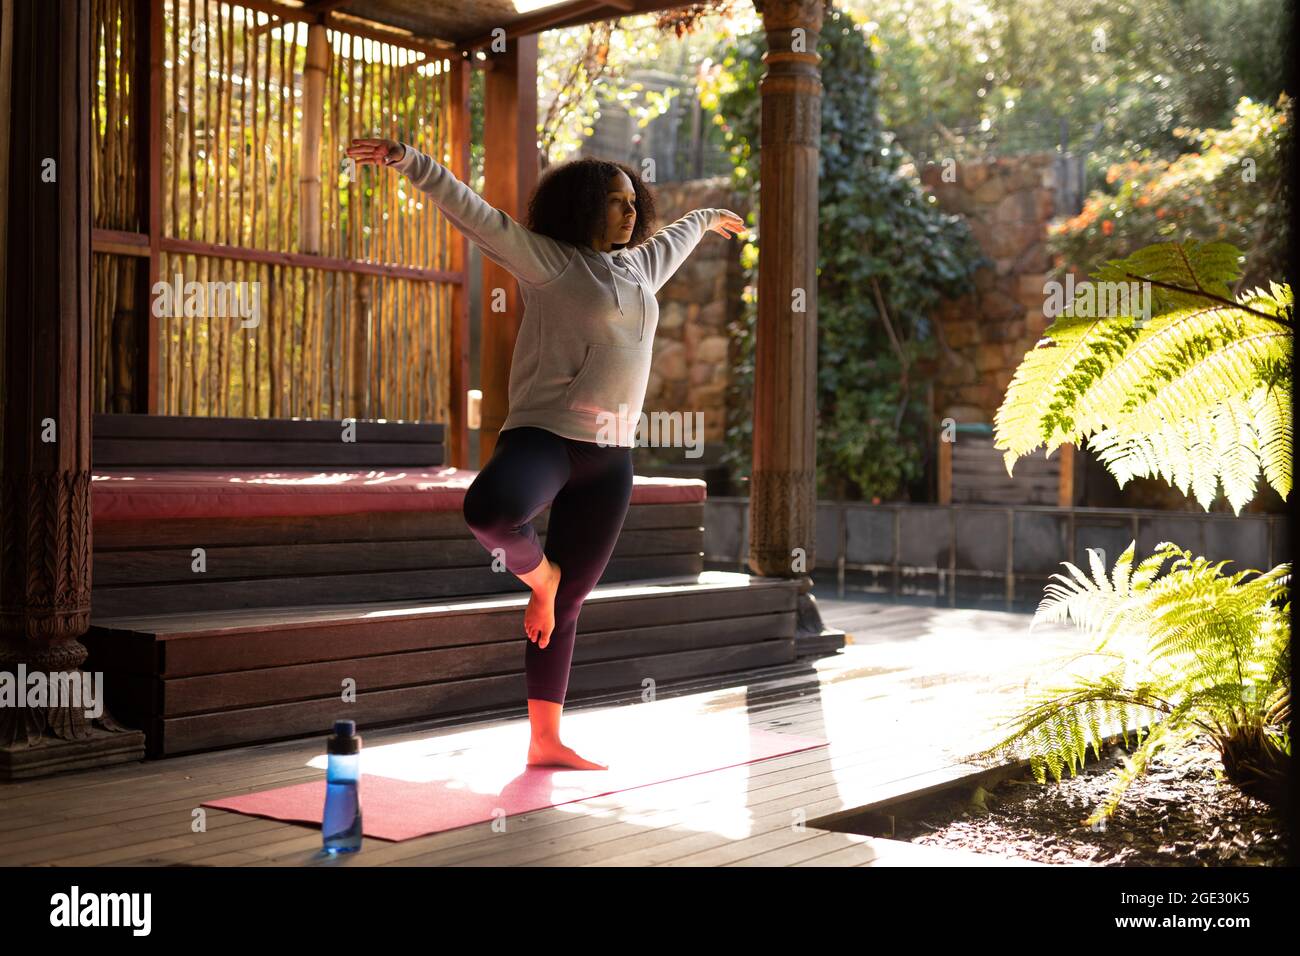 Frau mit gemischter Rasse, die Sportkleidung trägt und Yoga auf einer Yogamatte praktiziert Stockfoto